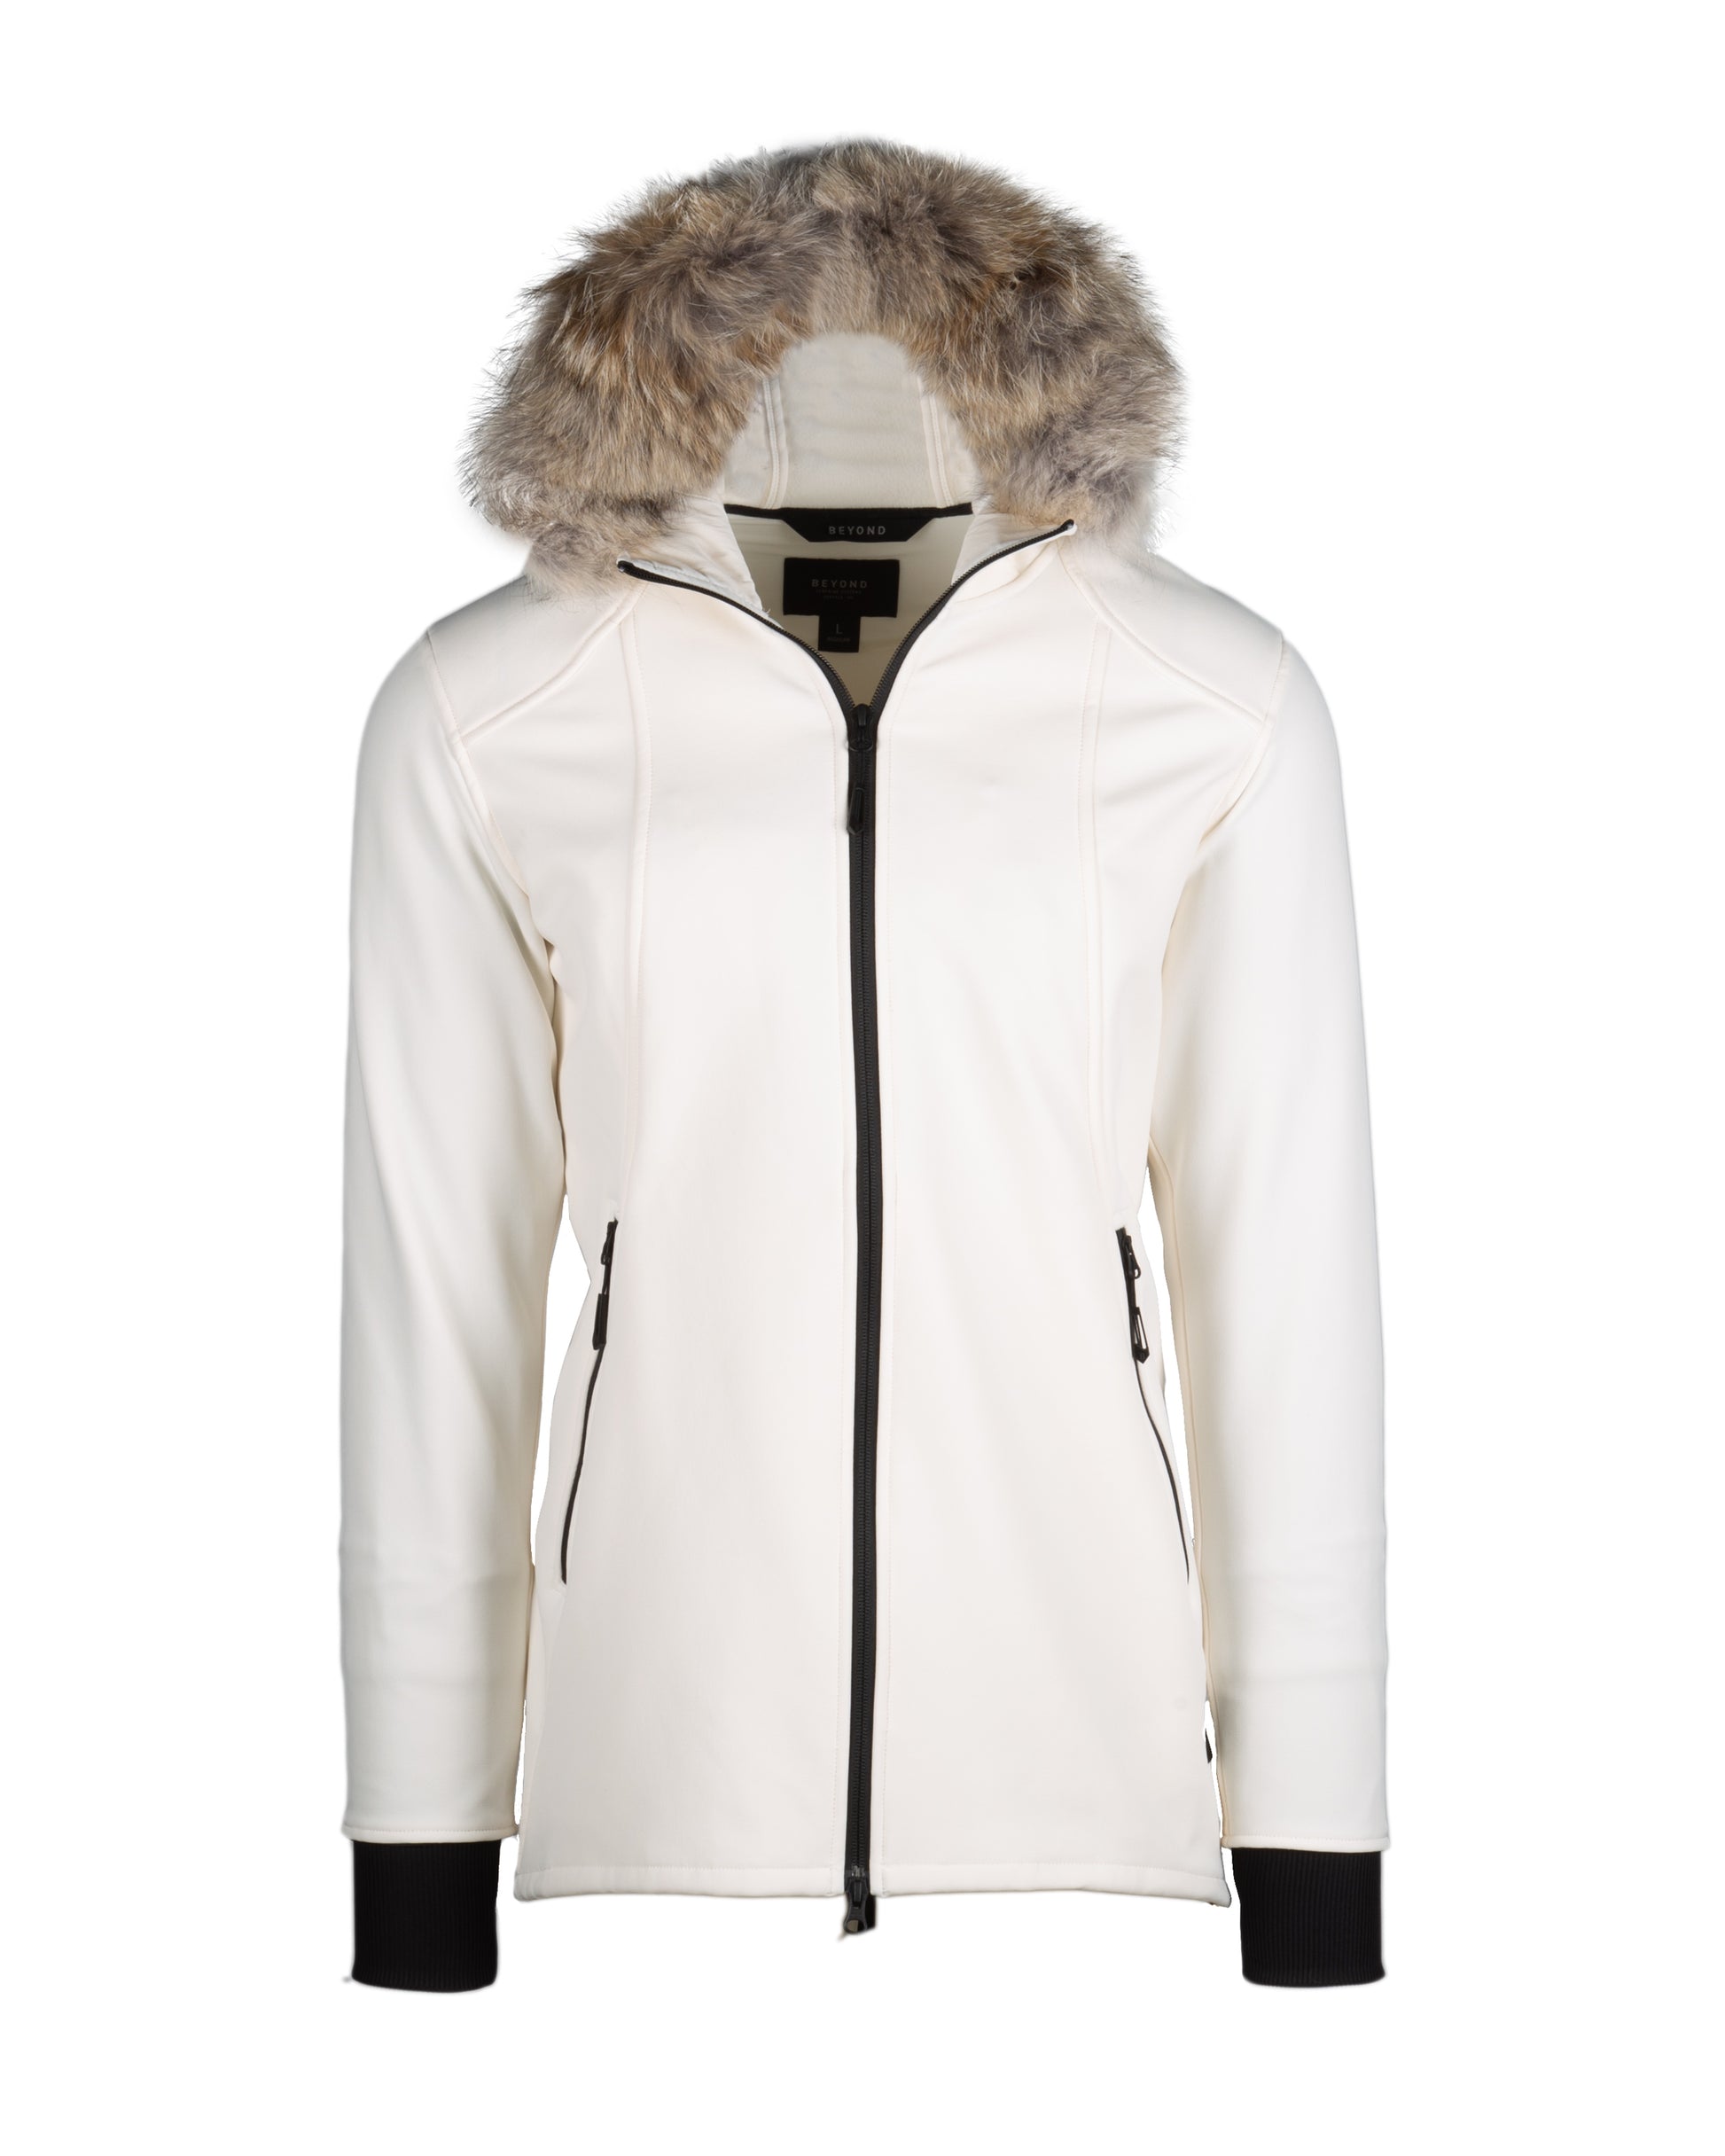 CANADA WEATHER GEAR Women's Jacket – Lightweight Sweater Fleece Sweatshirt  Jacket (S-XL), Size Small, Black at  Women's Coats Shop